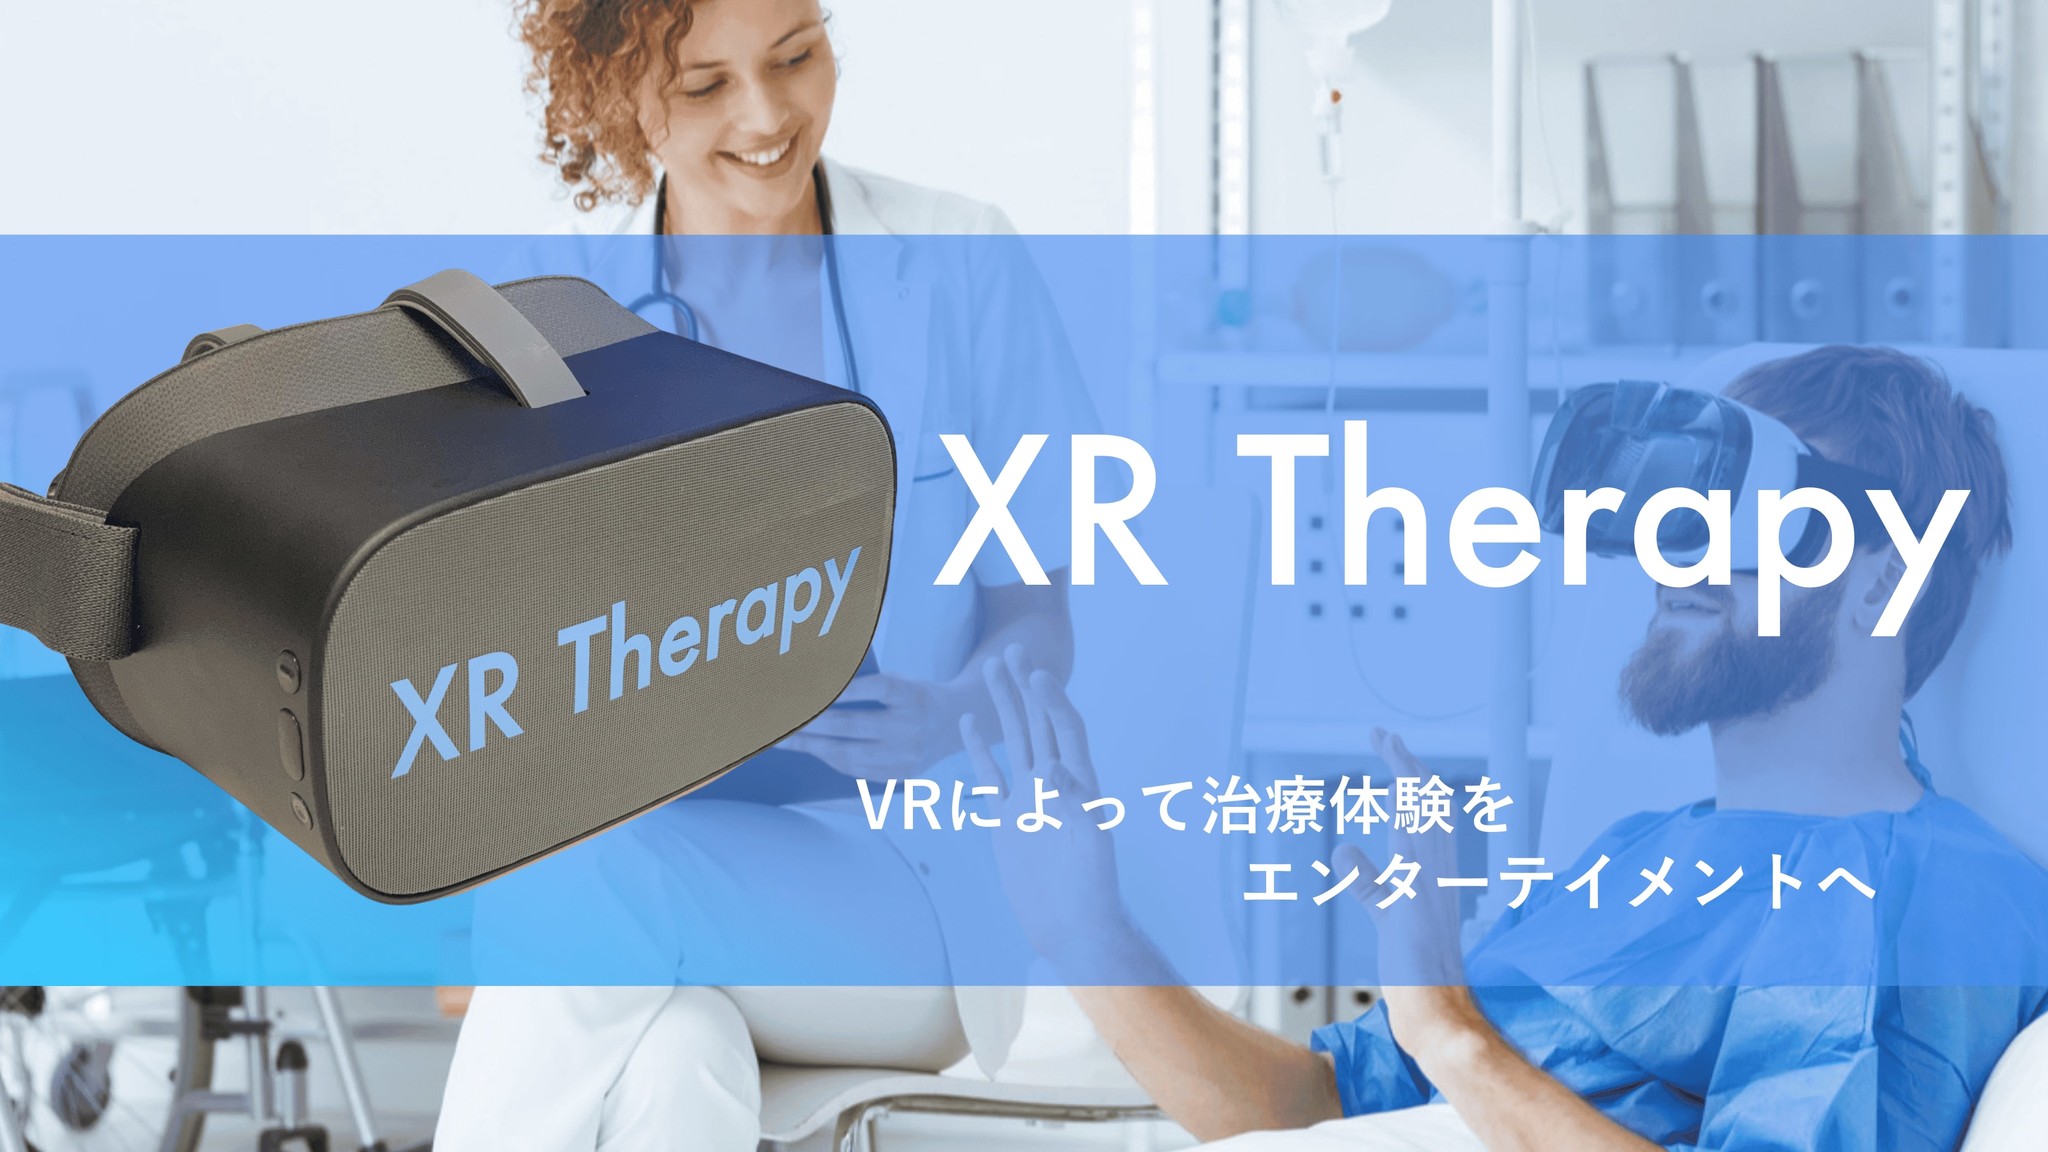 VRで治療体験をエンターテイメントに。XR Therapyの試験運用開始のお知らせ。